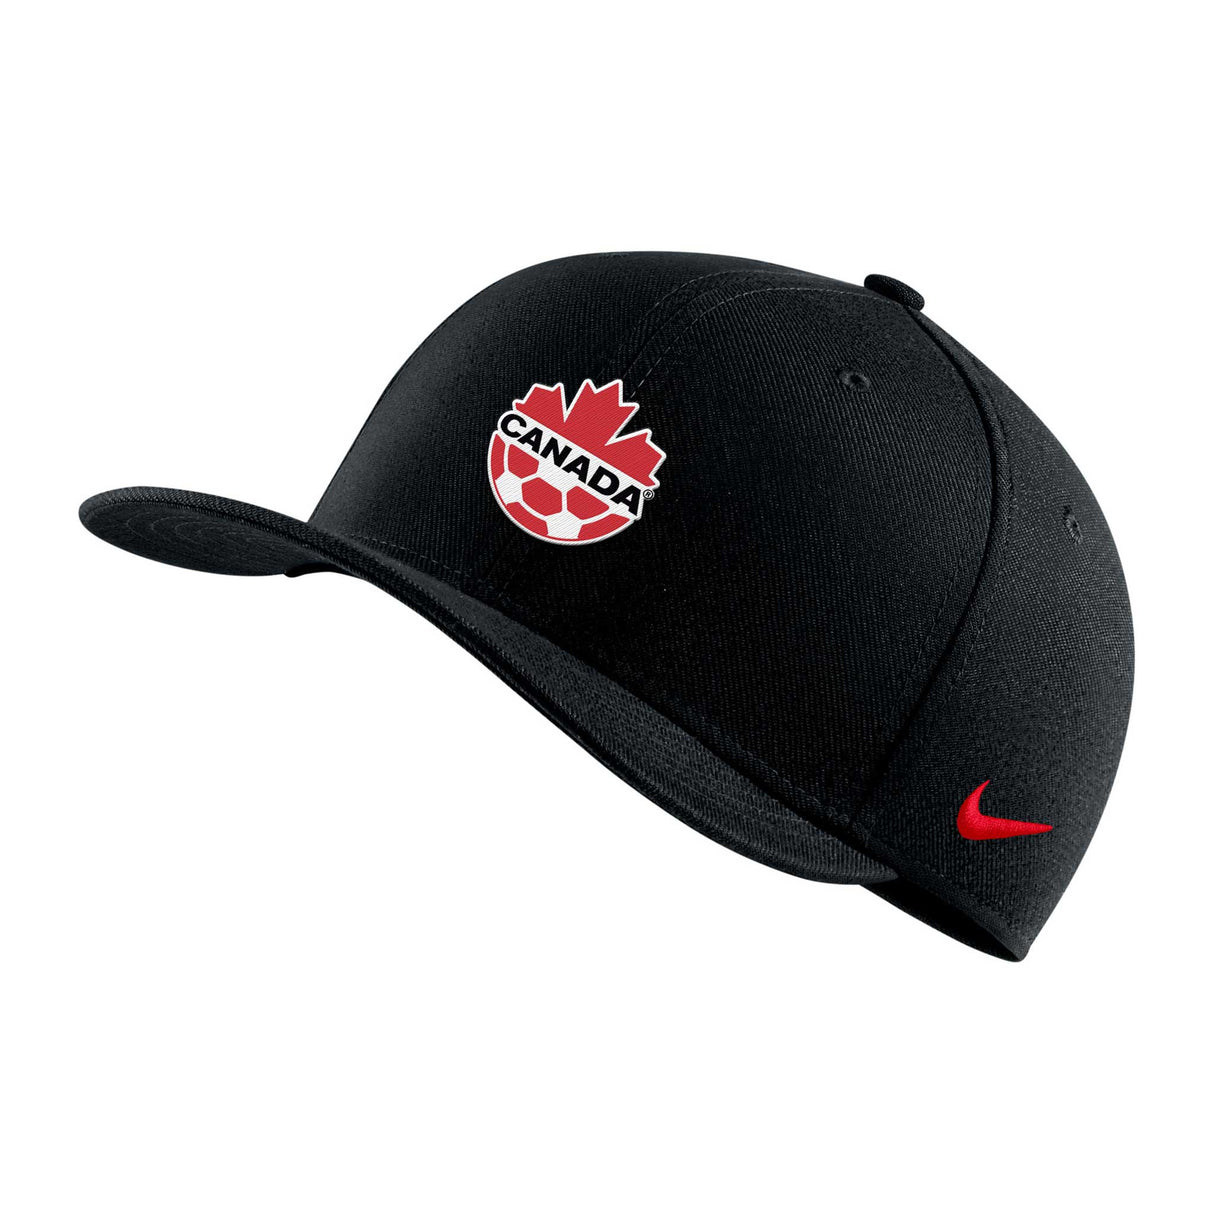 Nike Team Canada Soccer Logo casquette pour enfant de l'équipe nationale canadienne - Noir